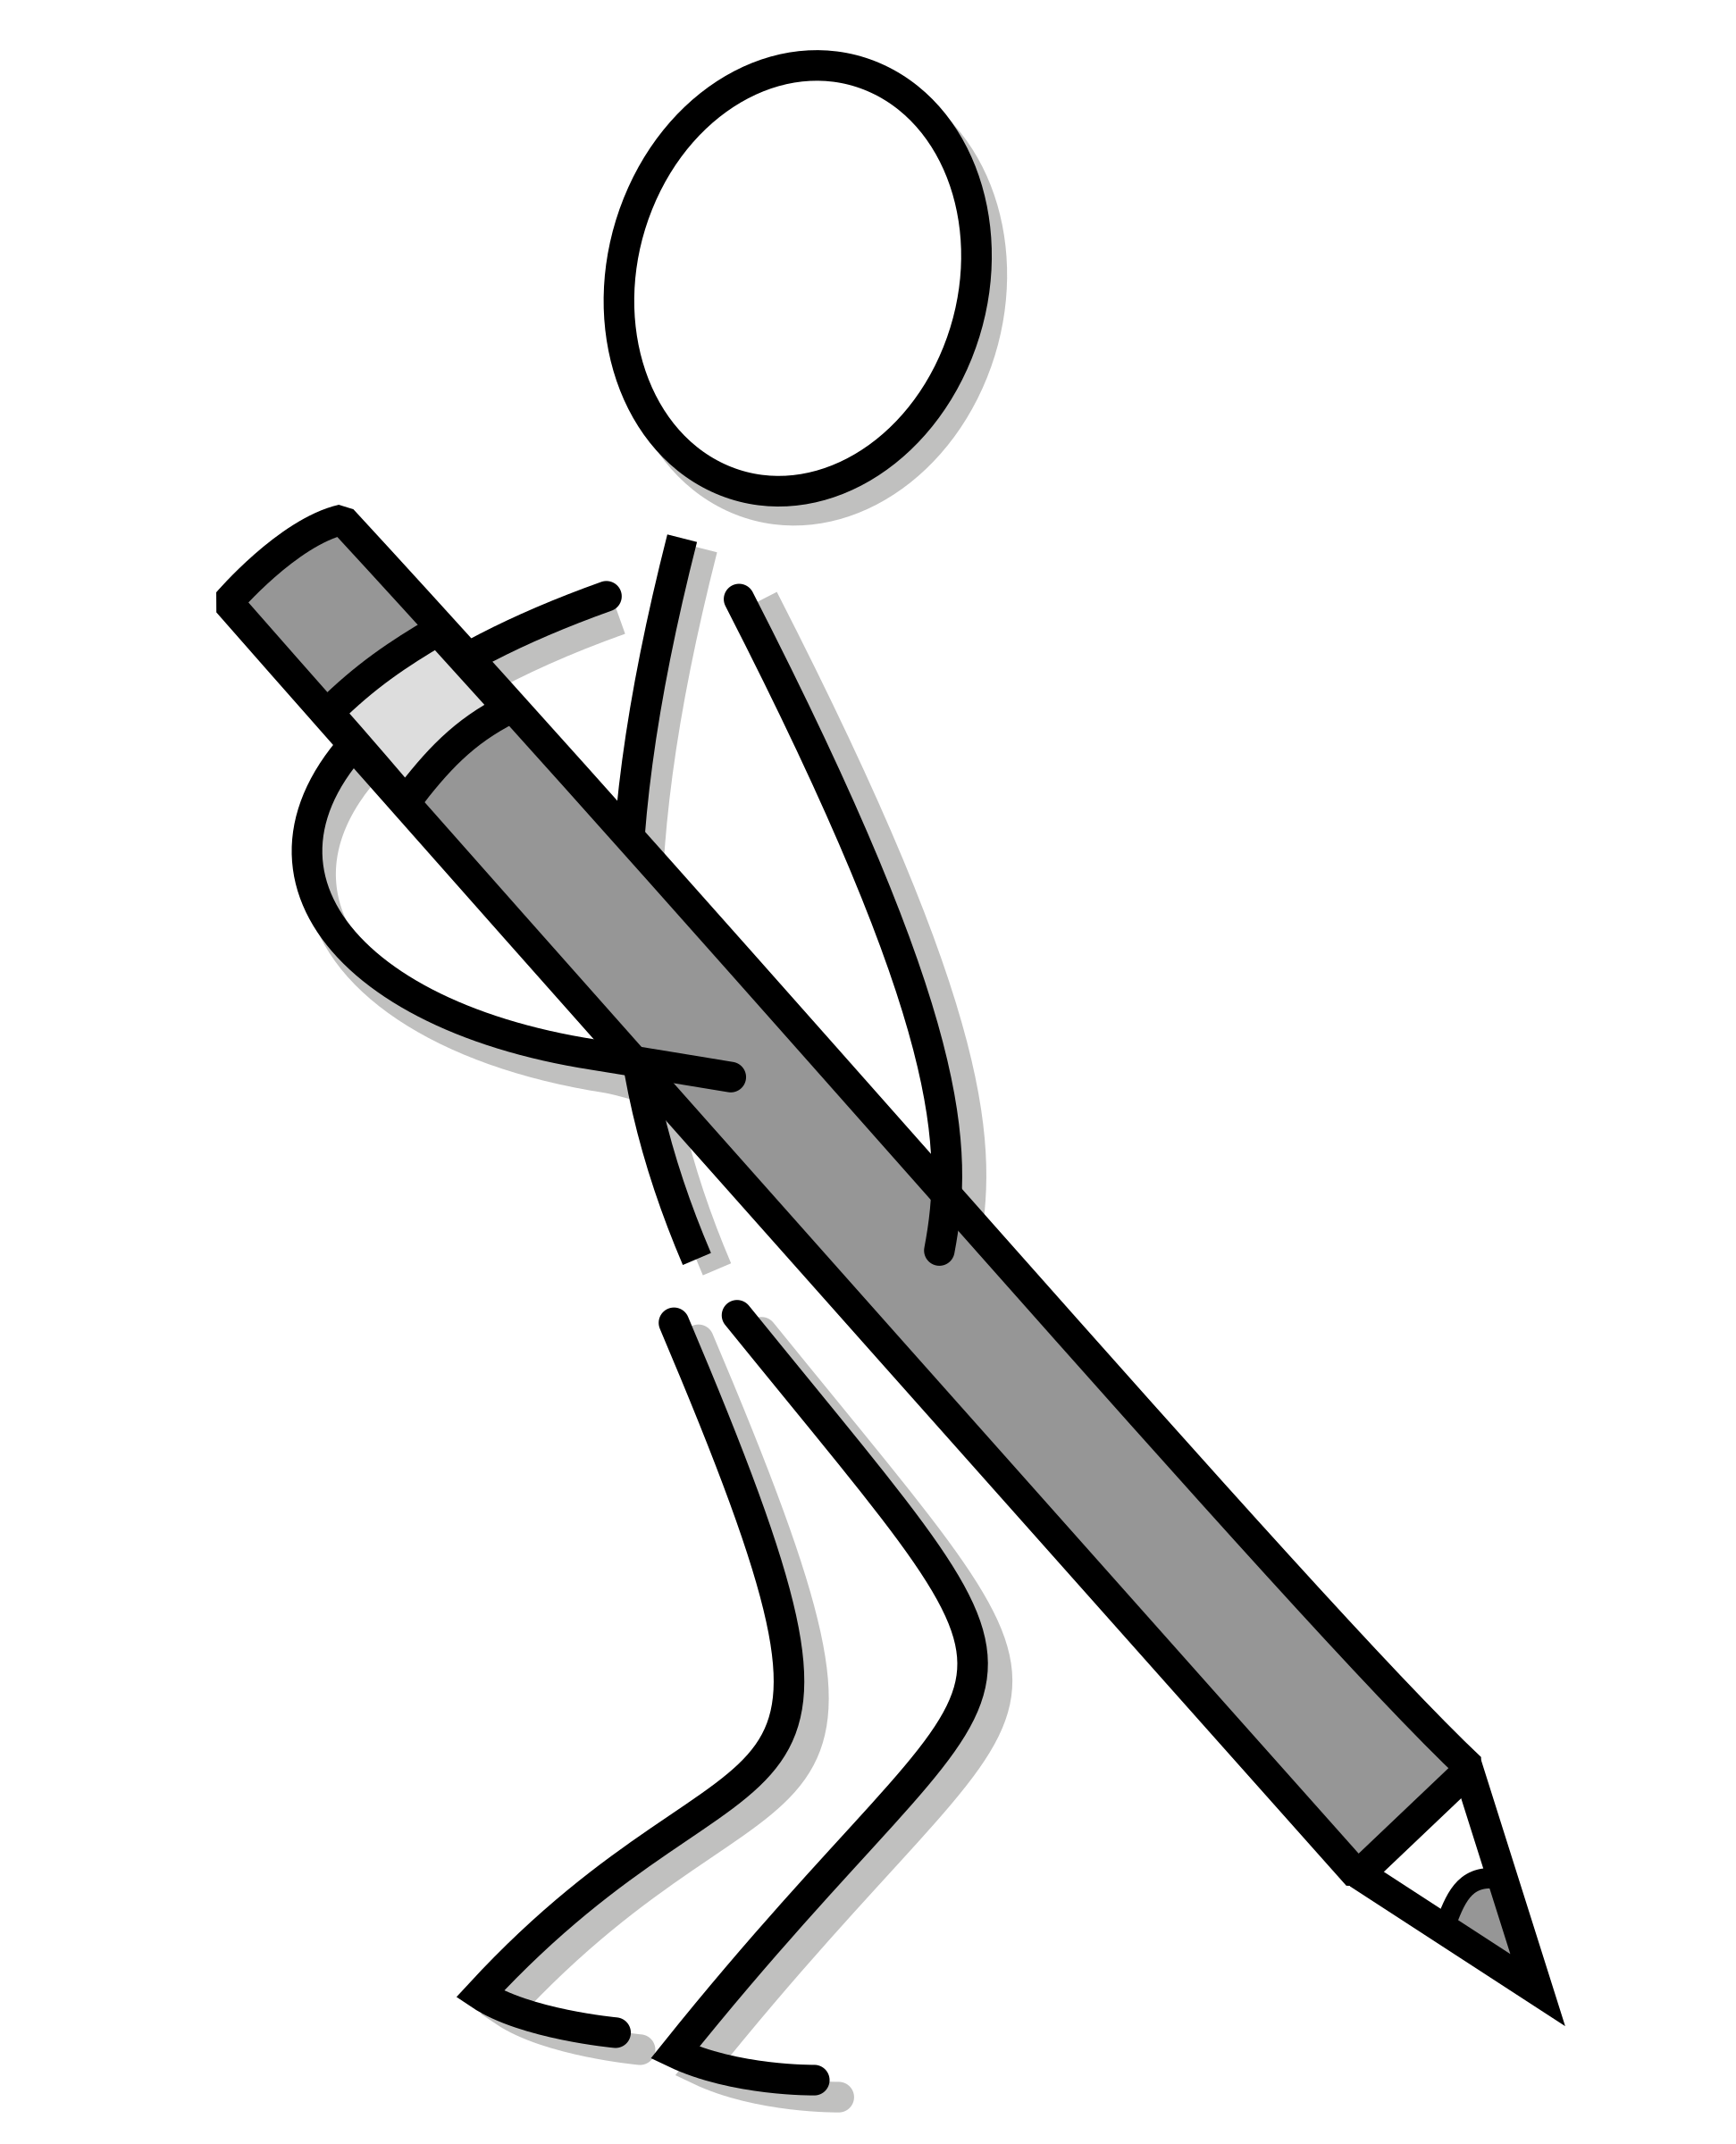 BLACK PENCIL BLACK vector icon, SVG(VECTOR):Public Domain, ICON PARK